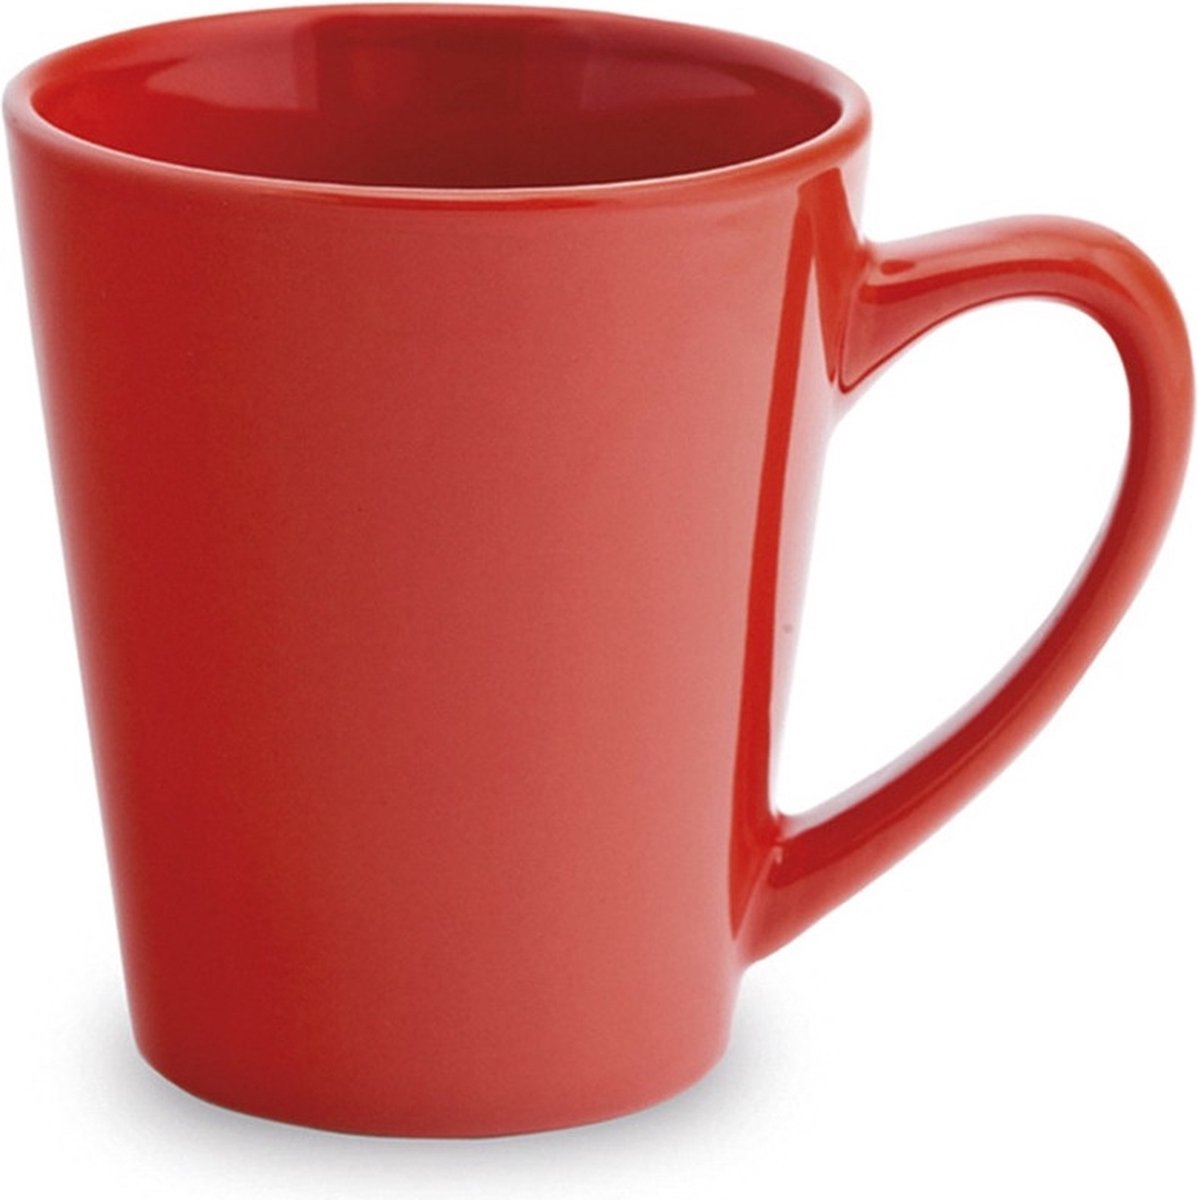 2x gobelet / mug rouge 350 ml - Céramique - mugs / tasses rouges